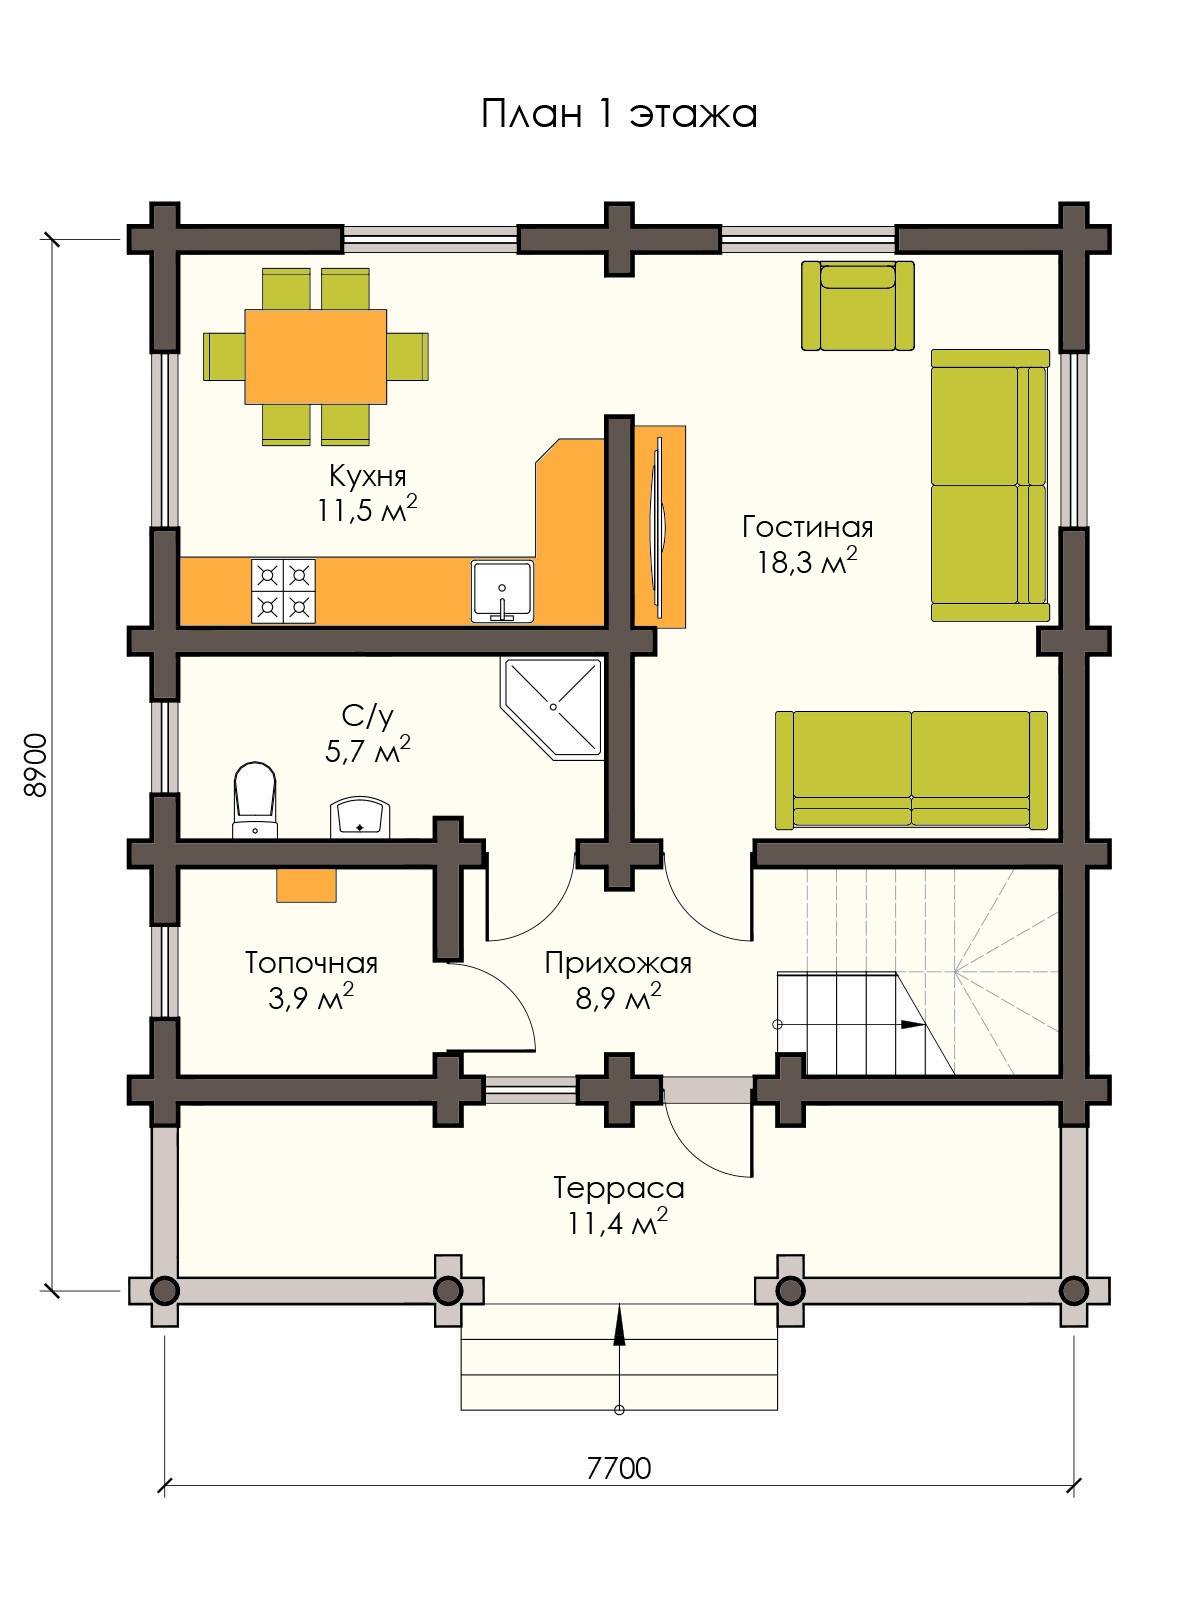 Планировка домов с мансардой - готовые планы коттеджей 8х10, 10х10, 9х9, 8x8, 9x12